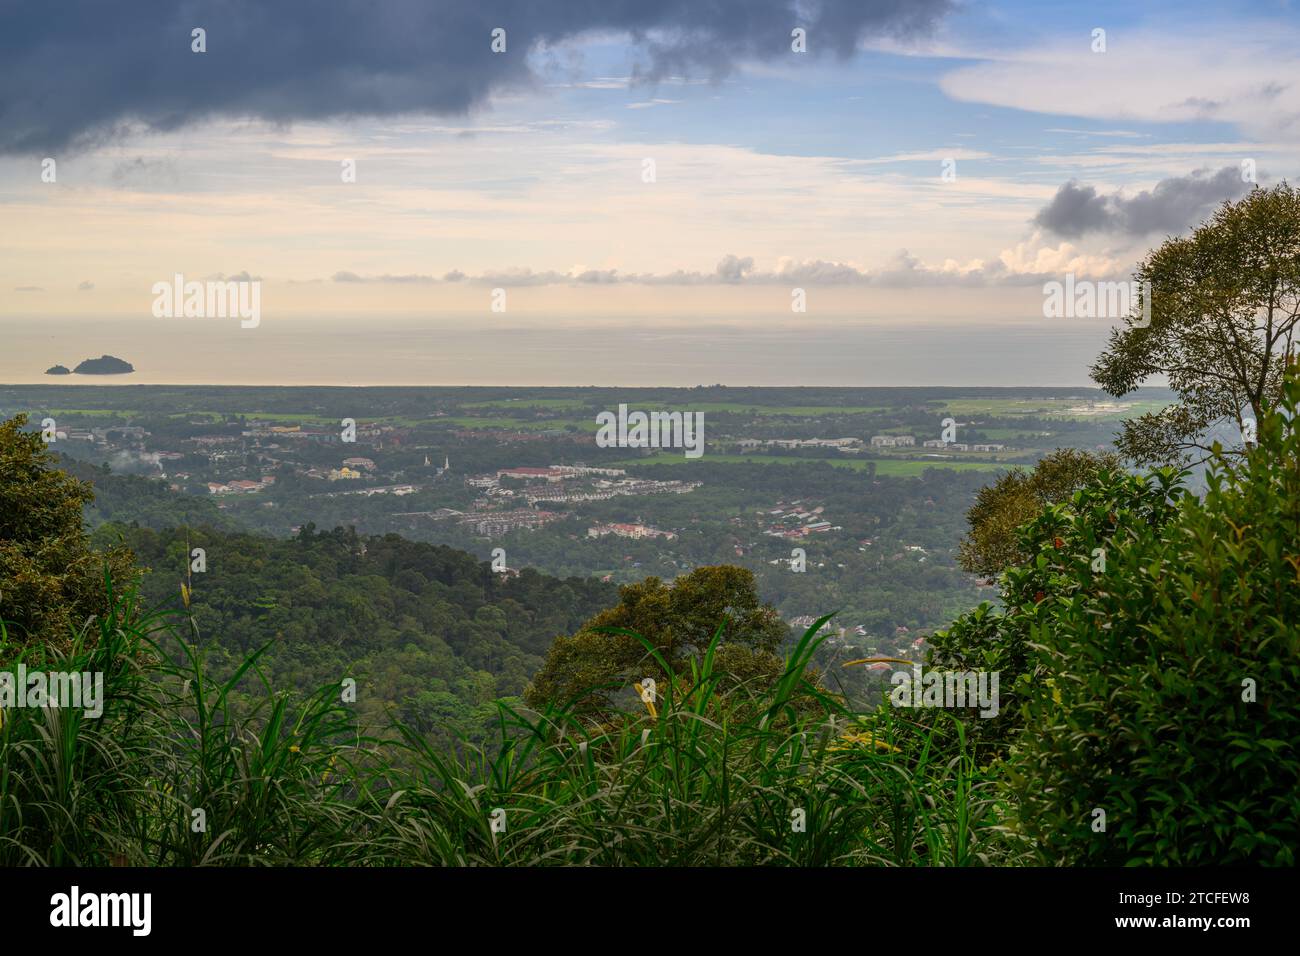 Cityscape of Balik Pulau, Penang, Malaysia Stock Photo